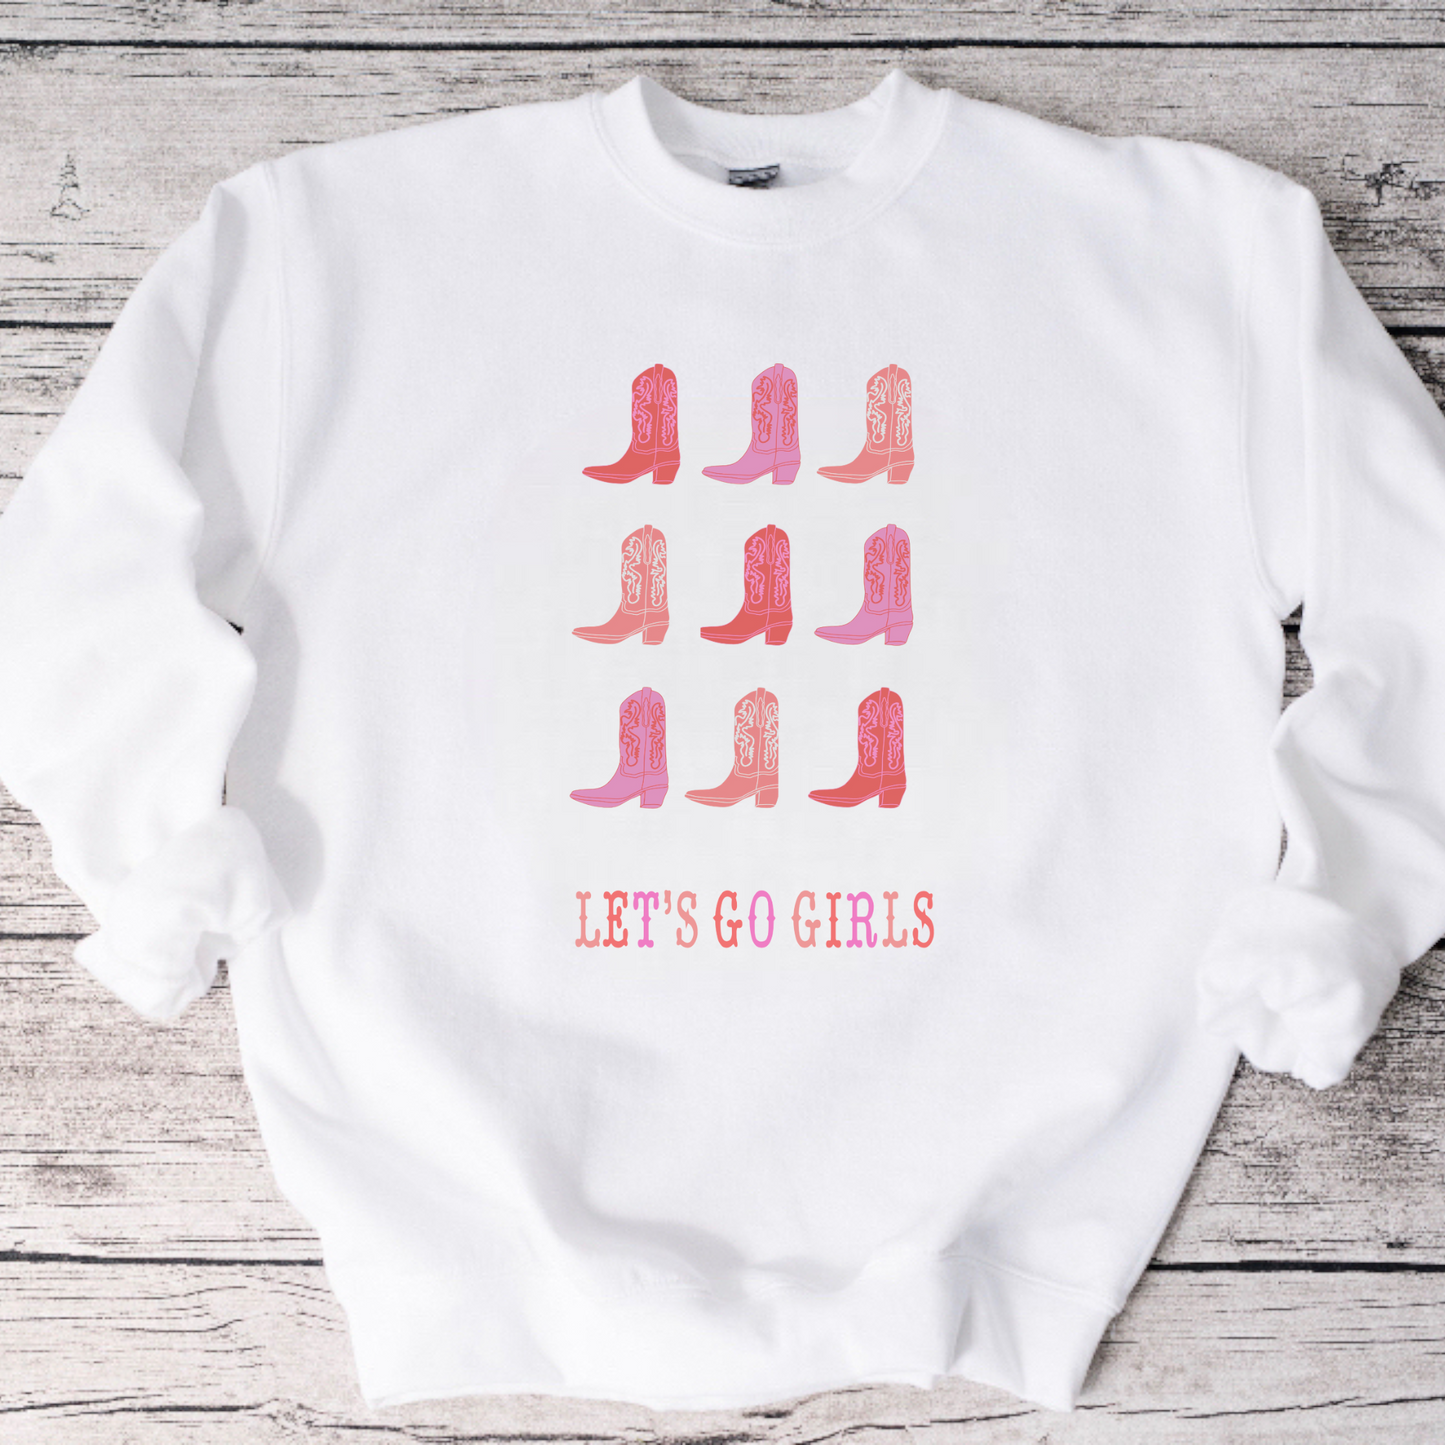 Let’s Go Girls Crewneck Sweatshirt or Tee